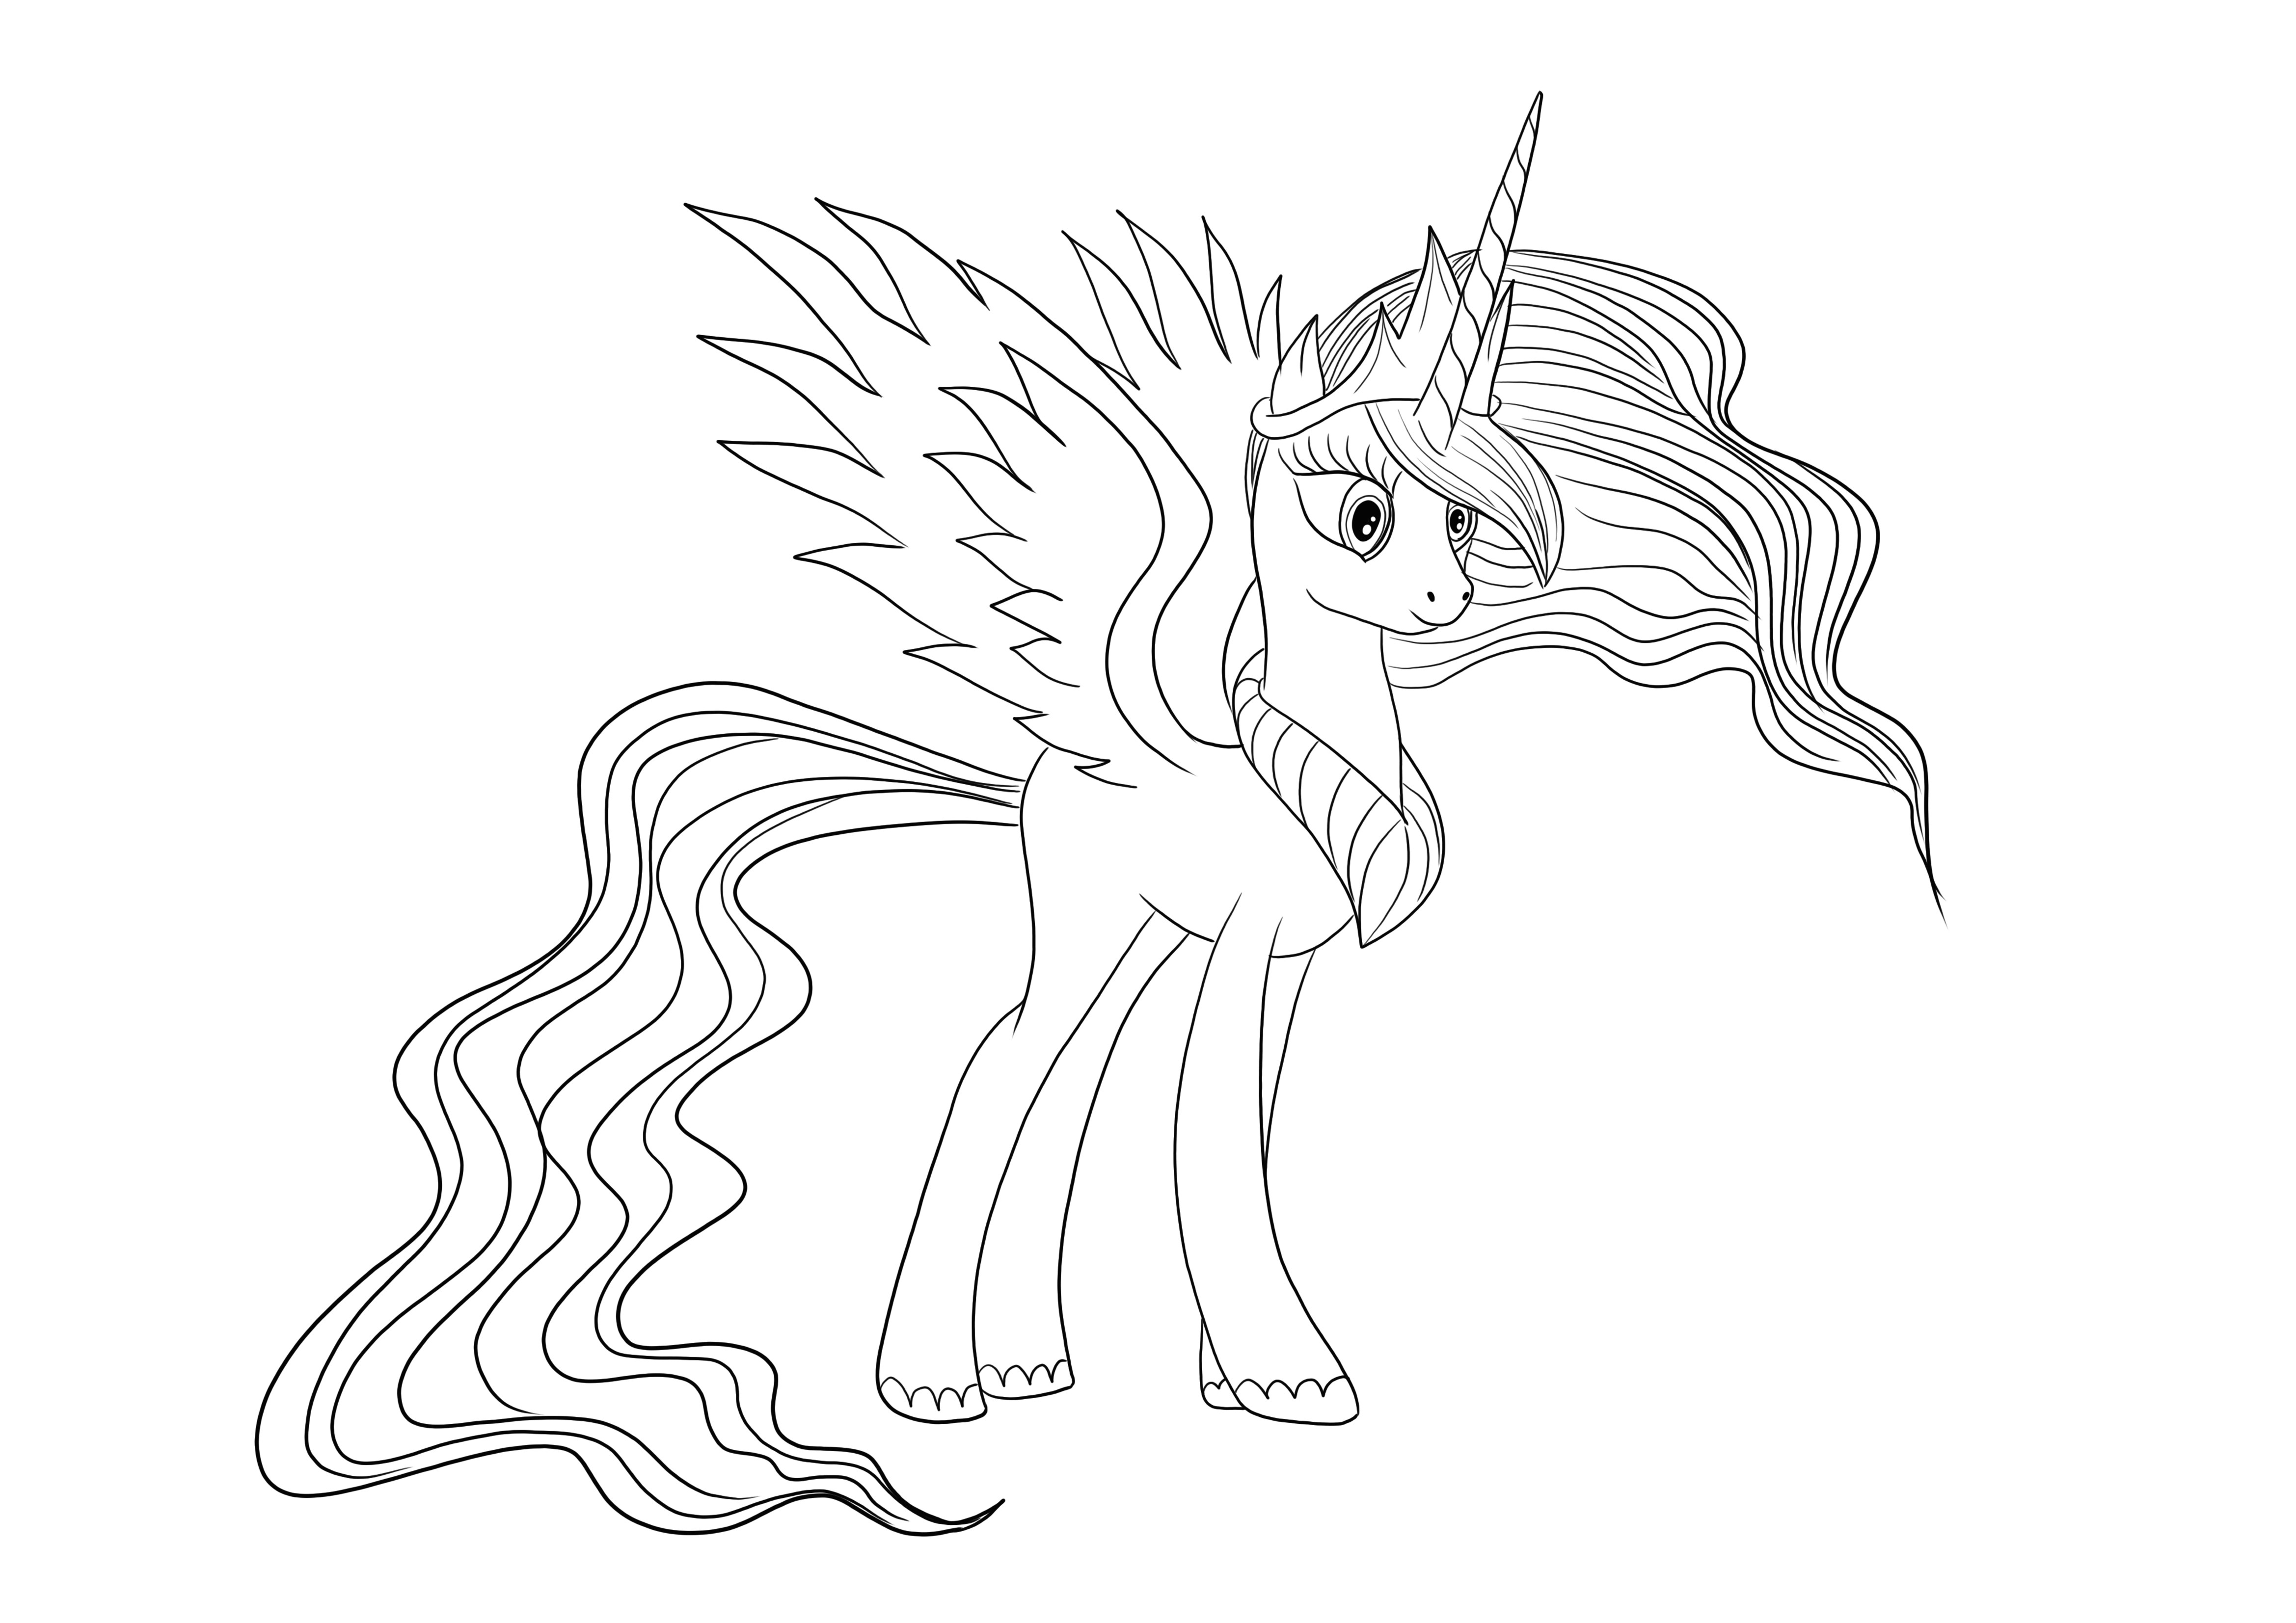 Gracious Princess Celestia di Little Pony da scaricare gratuitamente e immagine a colori